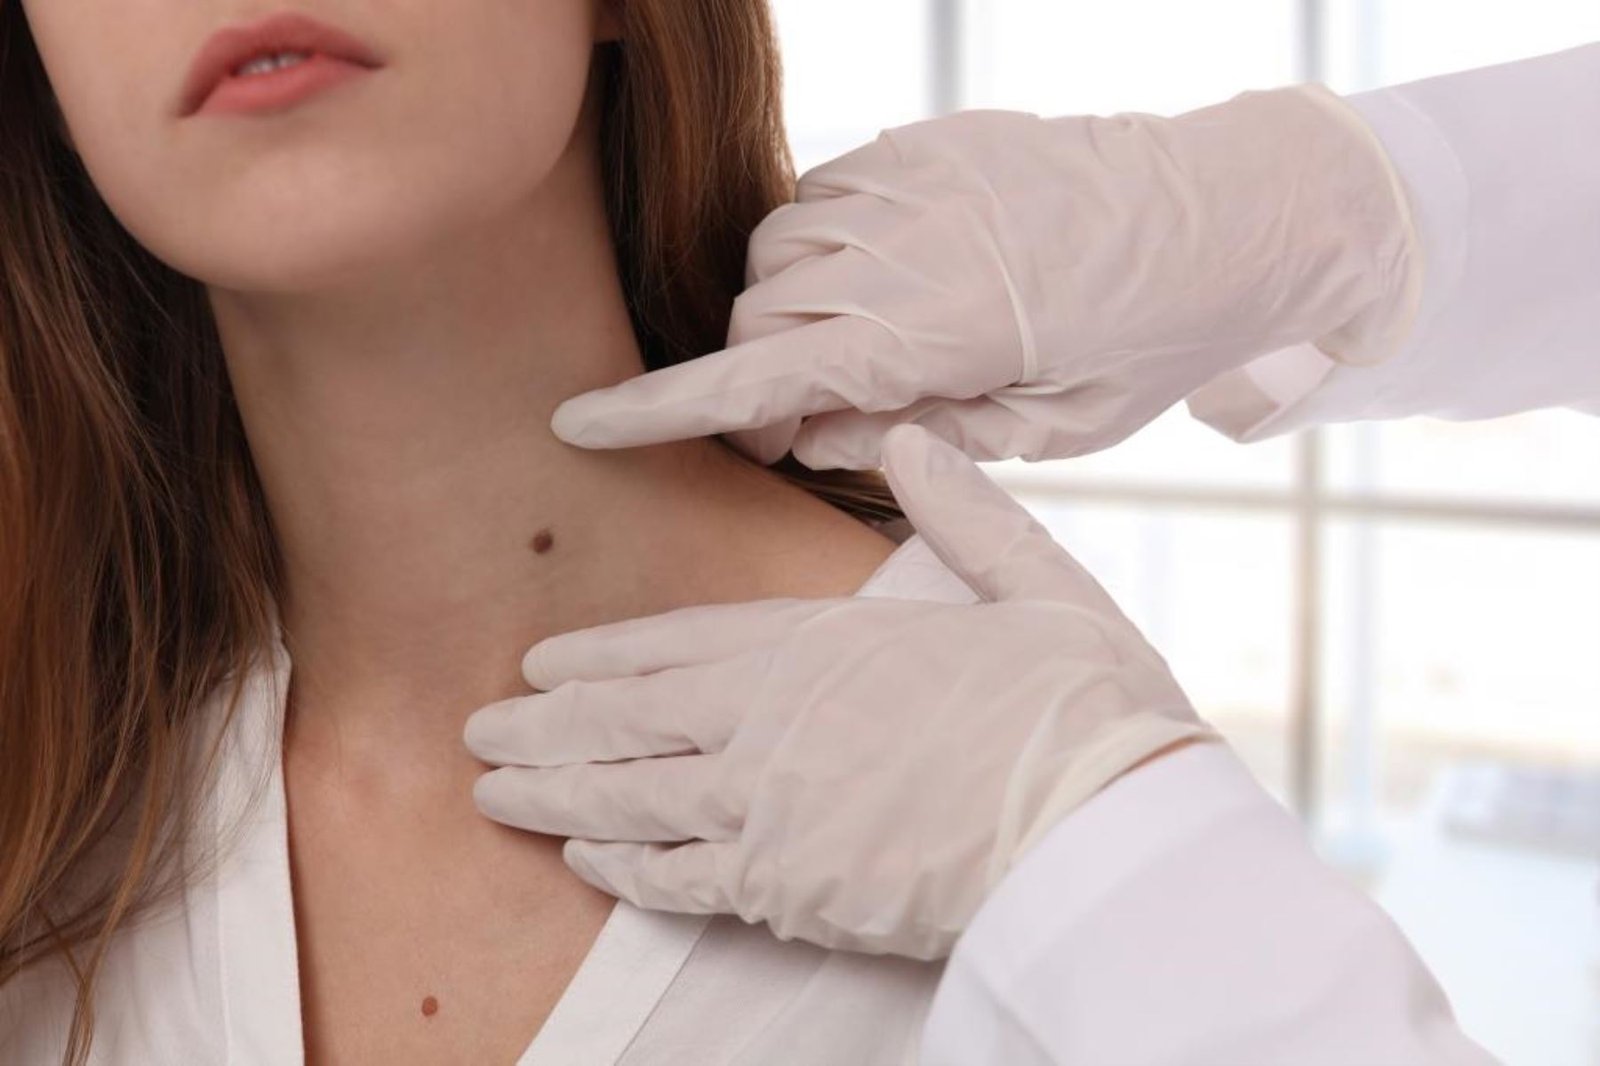 Lunares y riesgos: identifique señales de peligro de cáncer de piel